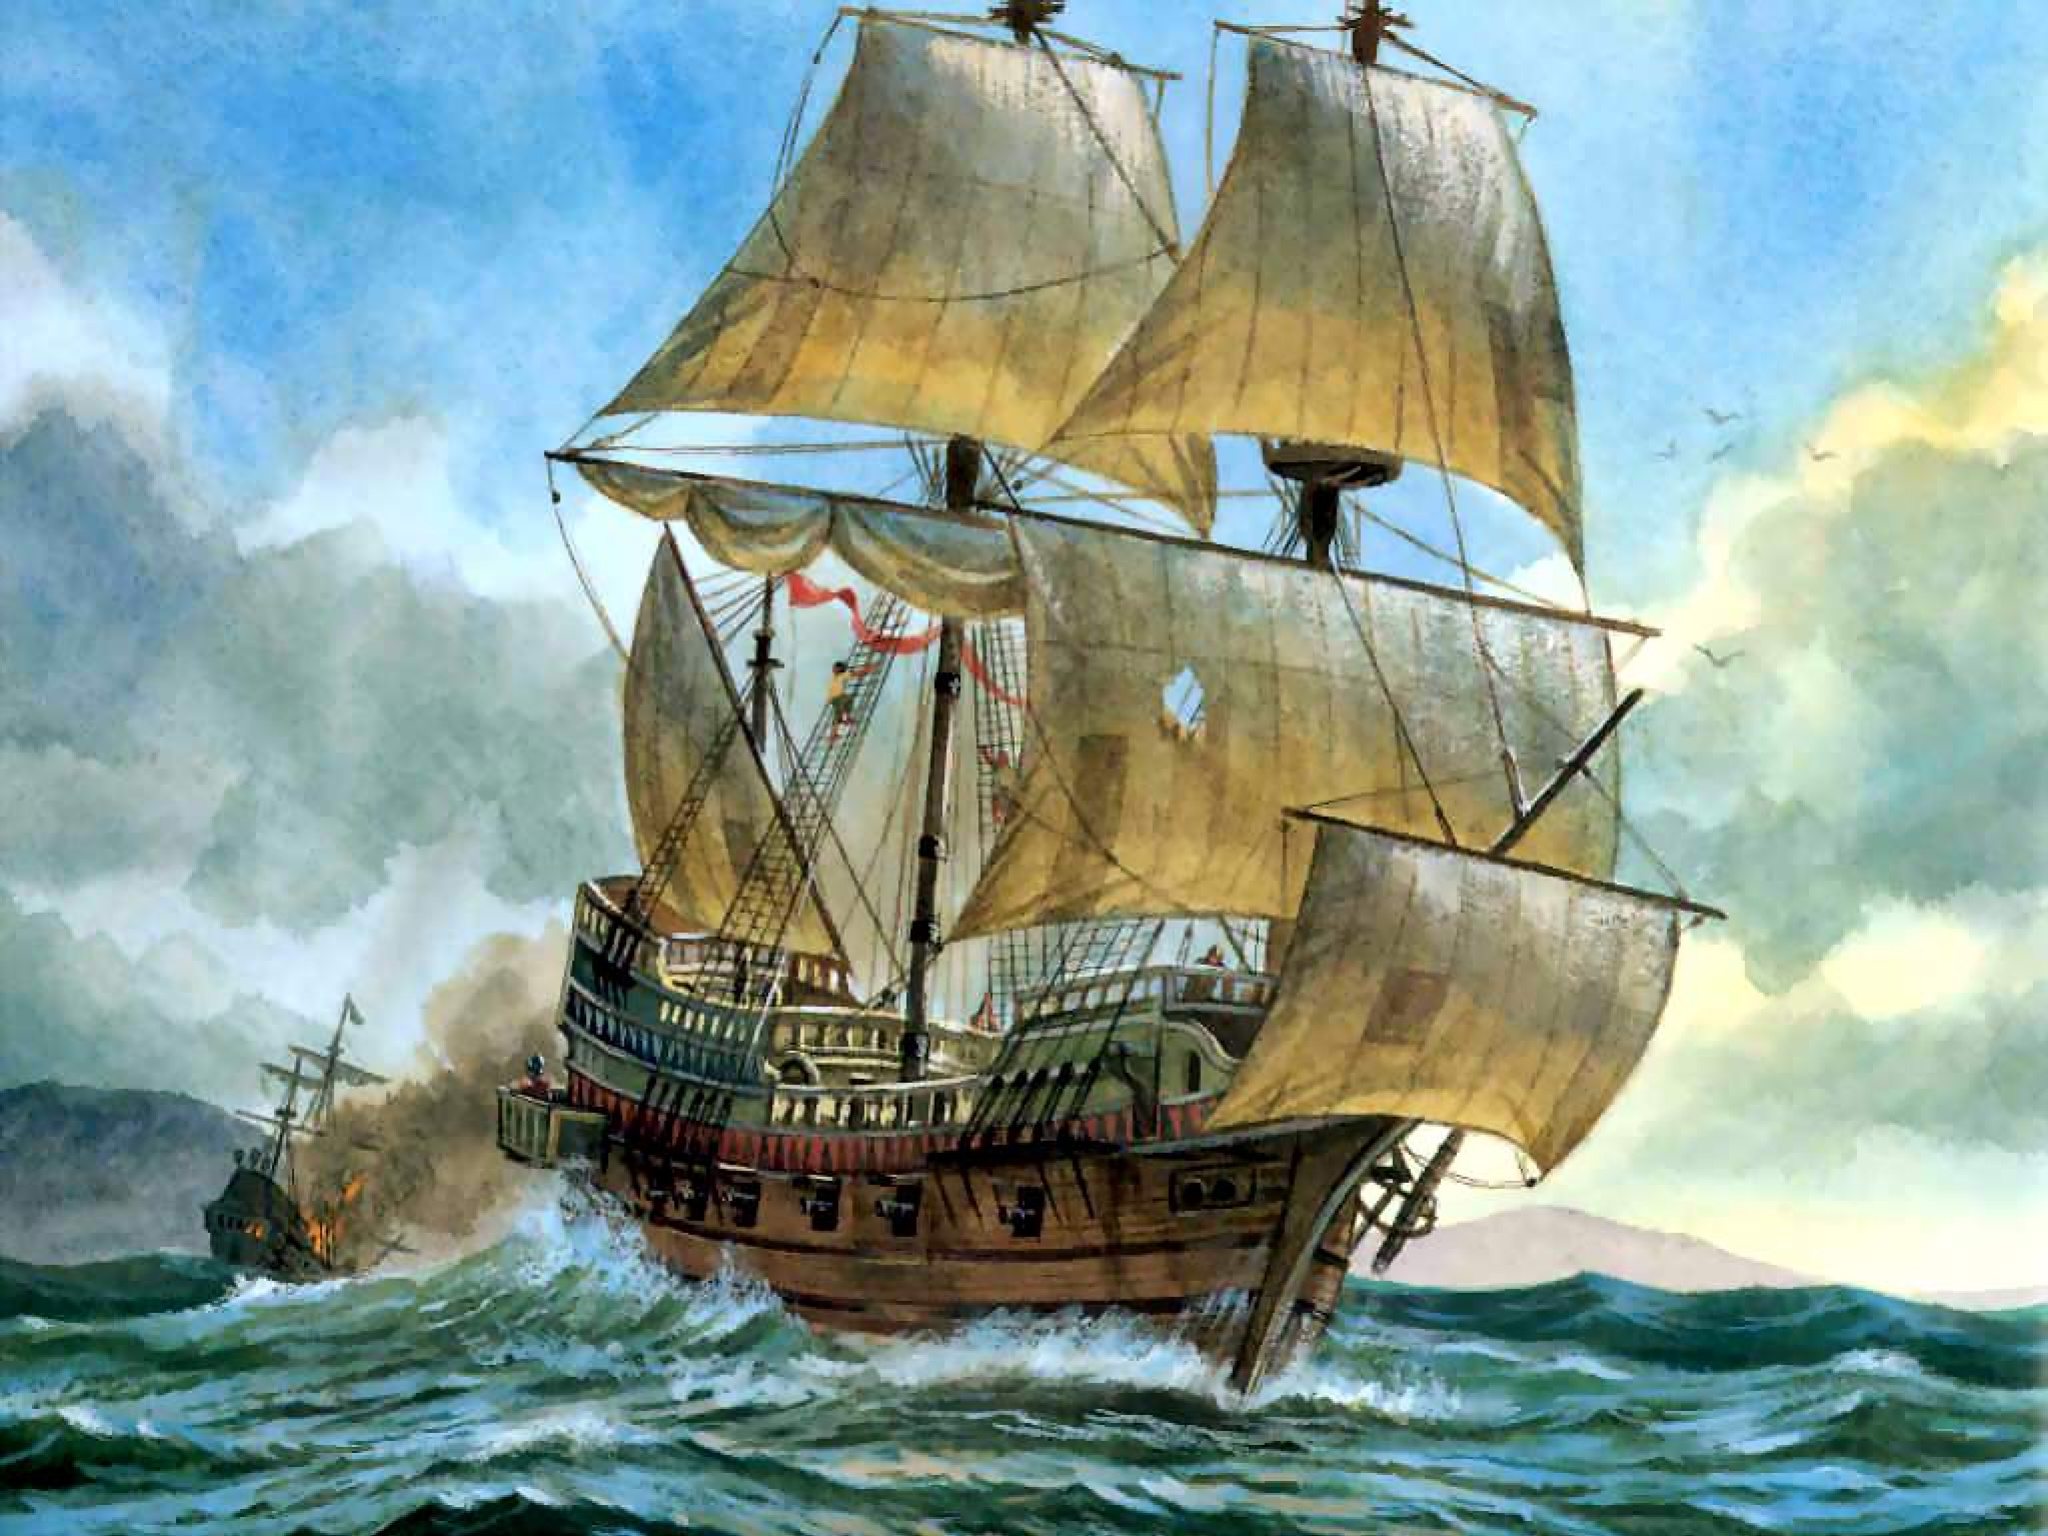 Томас Кавендиш: самый шустрый пират, который 200 лет обладал мировым рекордом скорости Кавендиш, через, корабли, «Желание», Кавендиша, после, моряков, пираты, который, всего, кругосветное, корабль, Однако, устремились, Африки, океан, галеон, «Красавчик, «Удовлетворение», вновь